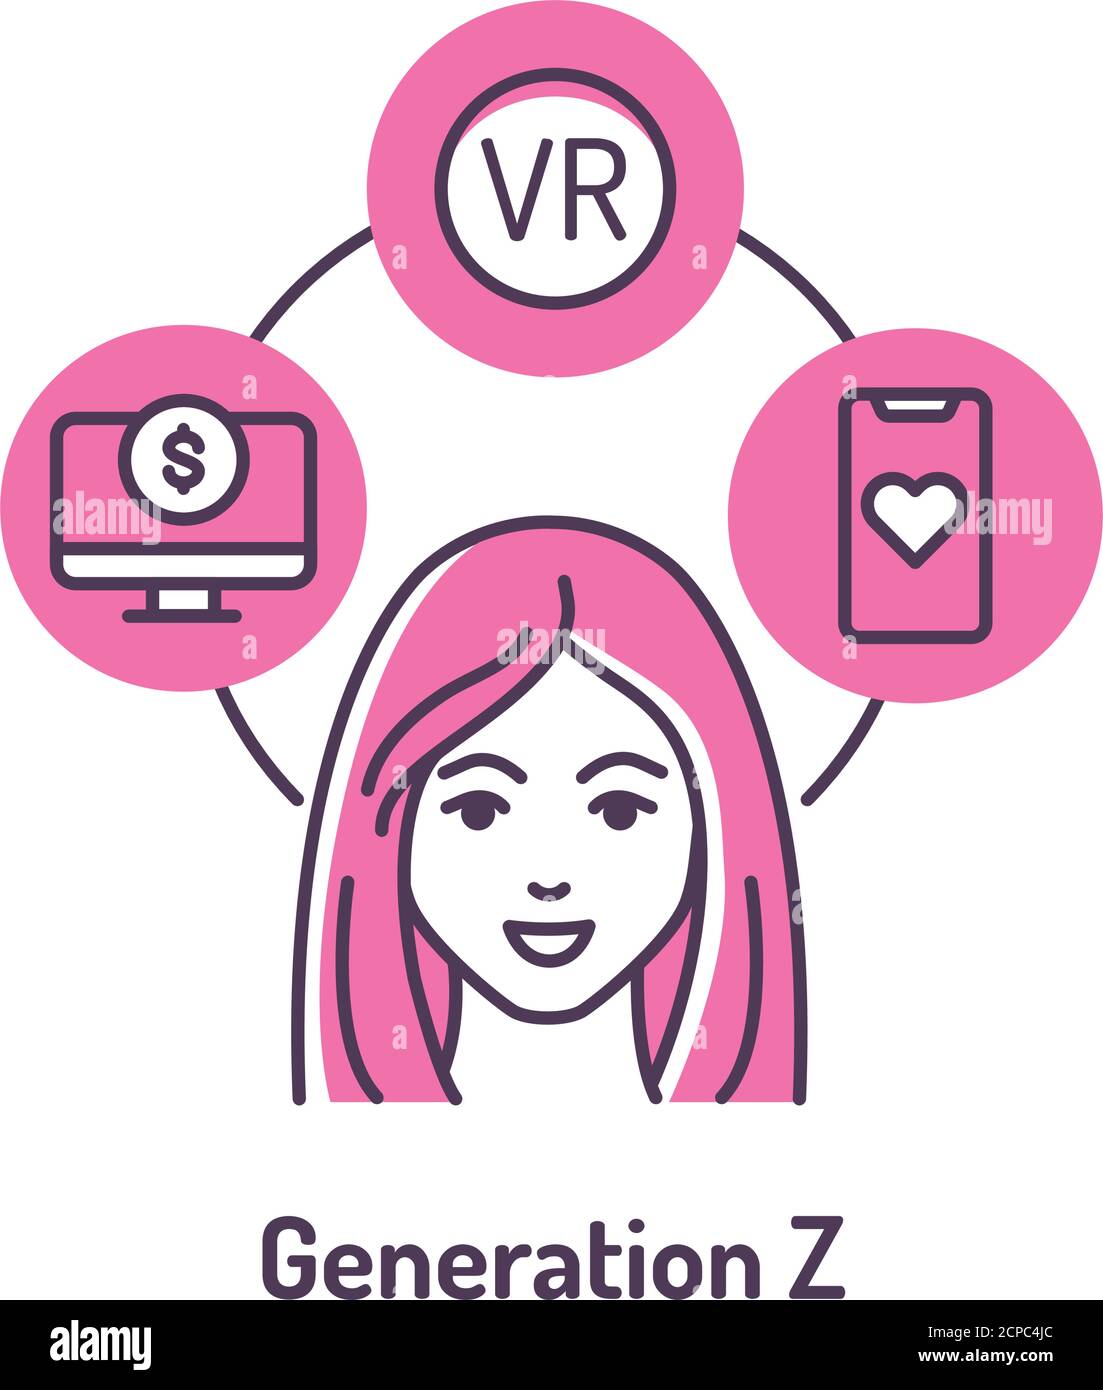 Genaration Z-Farbliniensymbol auf rosa Hintergrund. Lebensstil: Remote work, Startup, Online-Dating, Virtual Reality. Stock Vektor